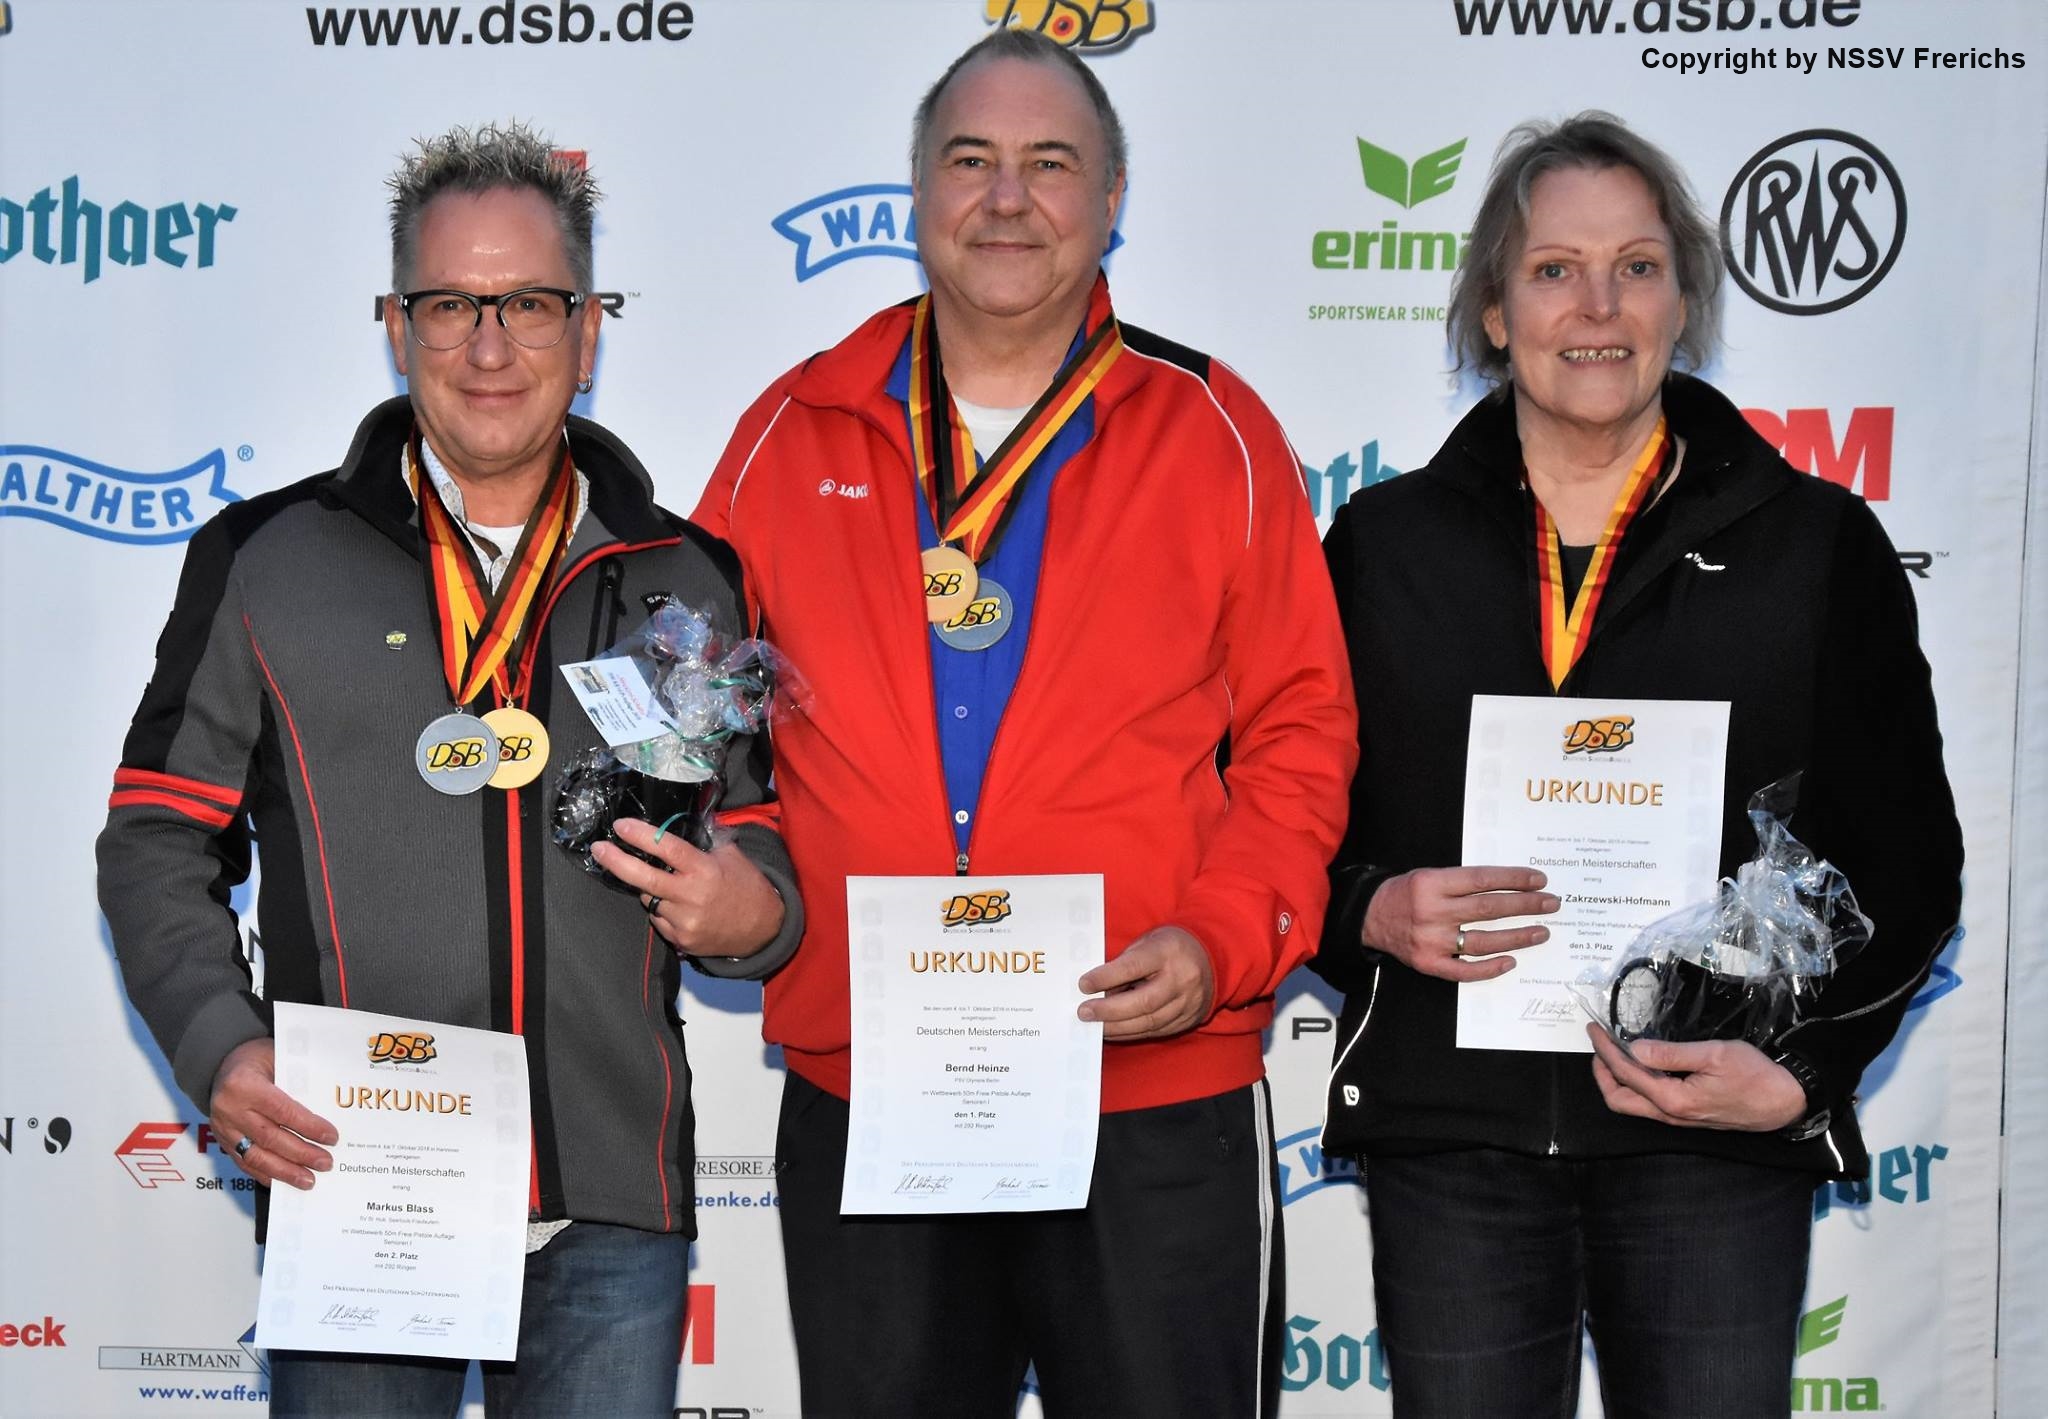 Deutscher Meister 50m Pistole Auflage Bernd Heinze
Bild: NSSV Frerichs